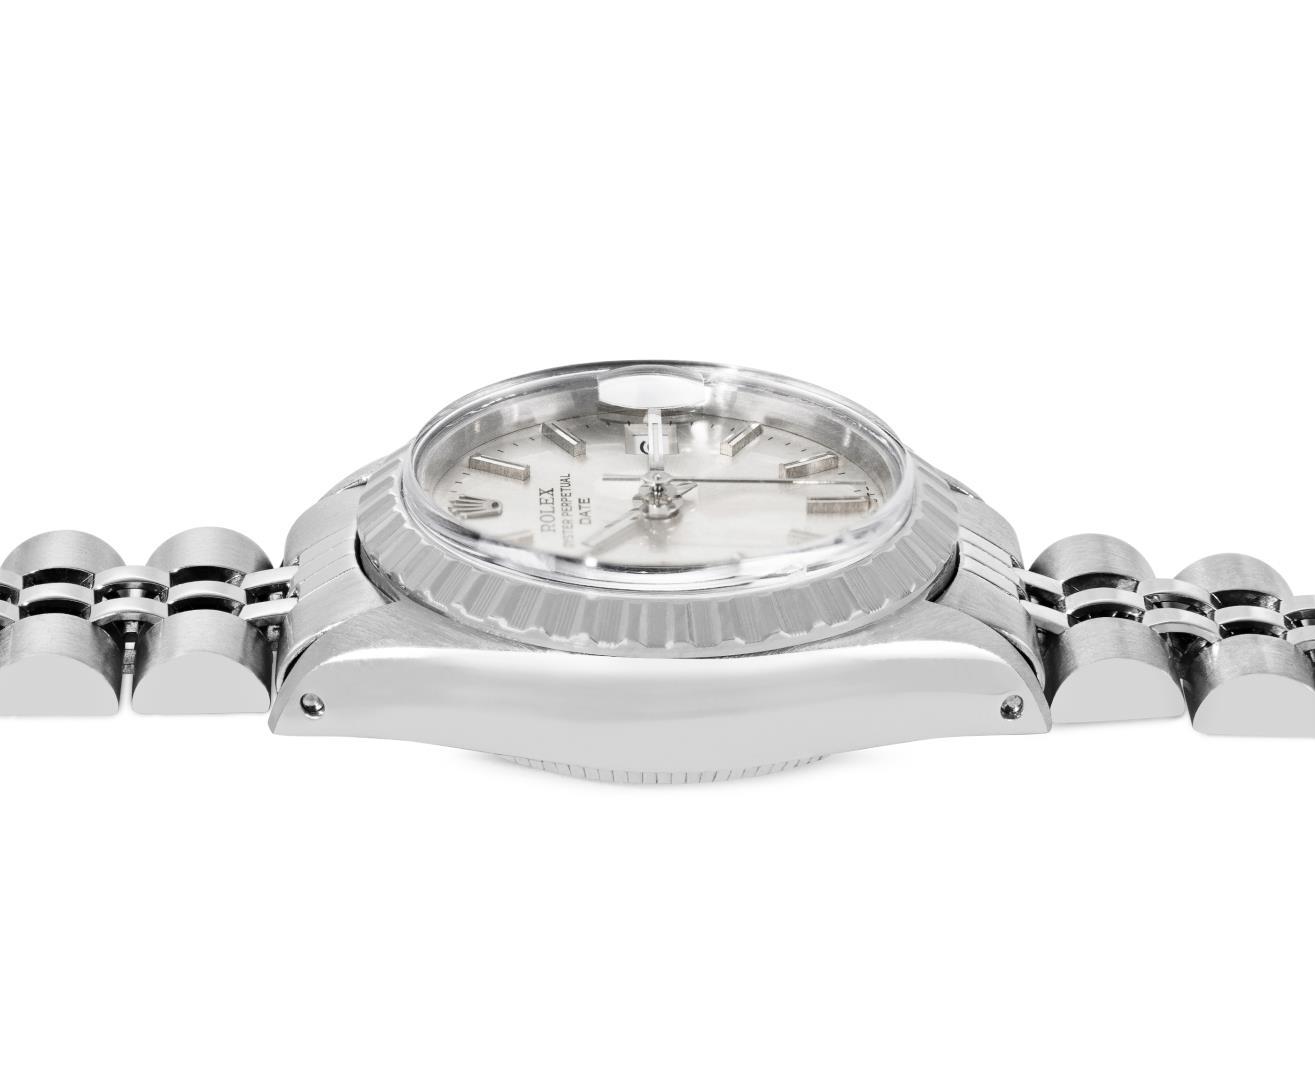 Rolex Ladies Stainless Steel Silver Index Engine Turn Bezel Watch With Rolex Box